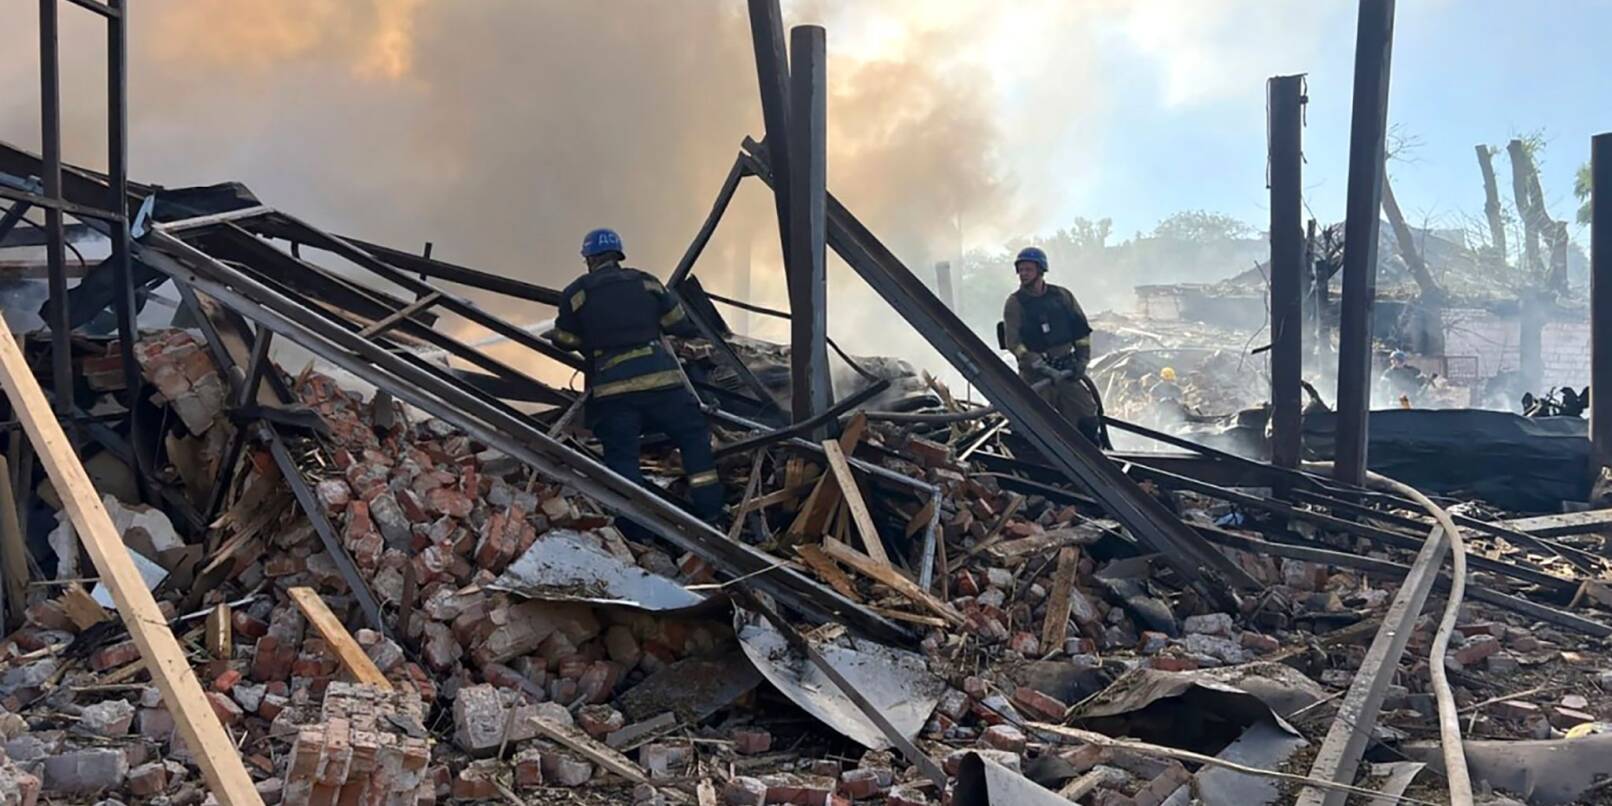 Rettungskräfte arbeiten in Krywyj Rih nach einem Angriff daran, einen Brand zu löschen.